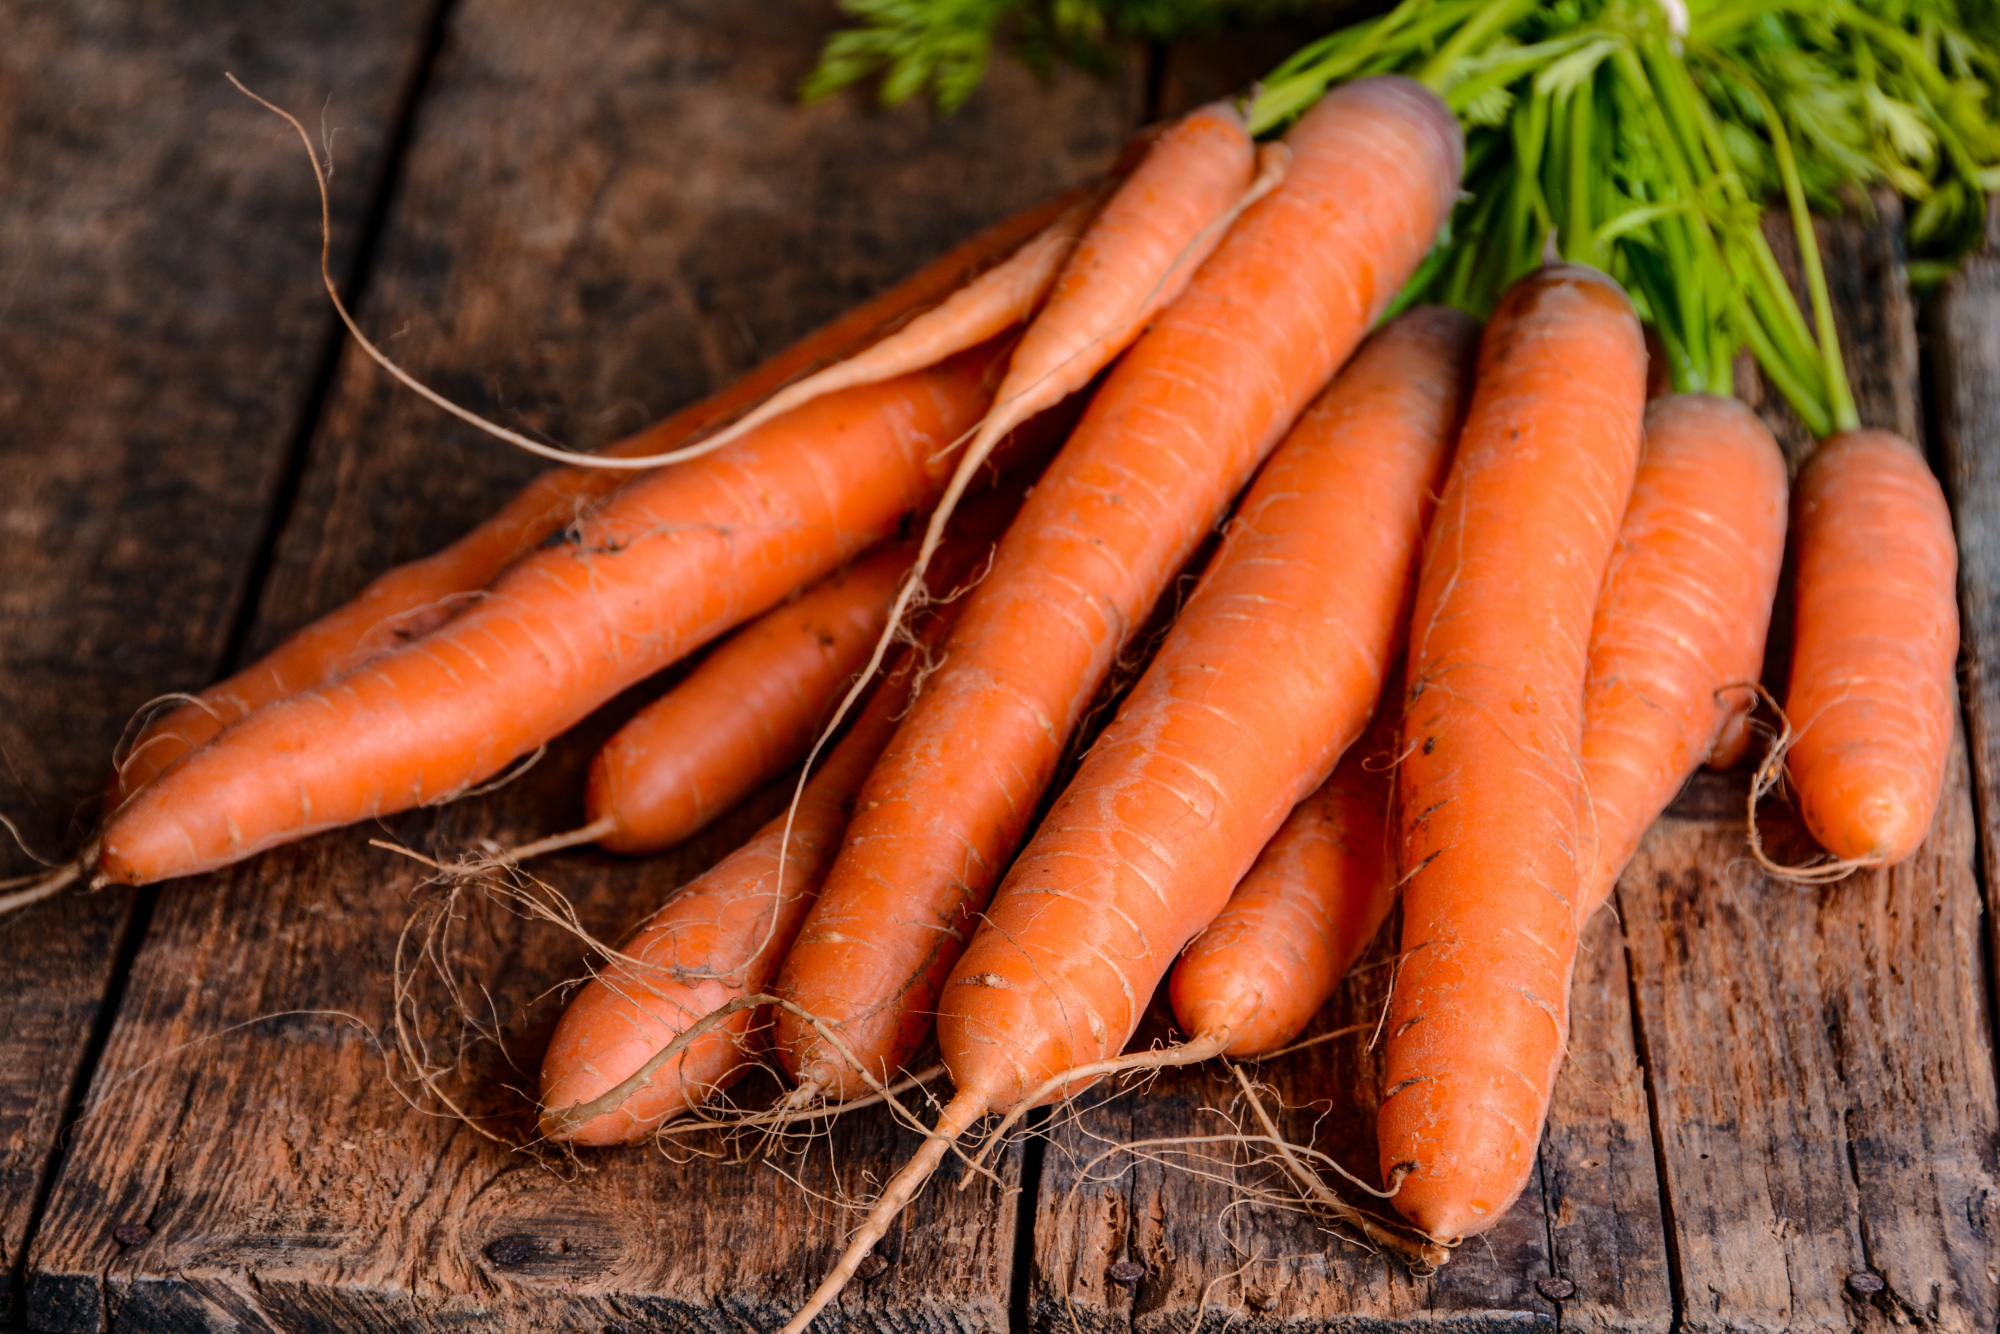 5 loại thực phẩm bạn tuyệt đối không nên ăn cùng với củ cải trắng nếu không muốn mất chất, thậm chí gây ngộ độc - Ảnh 5.